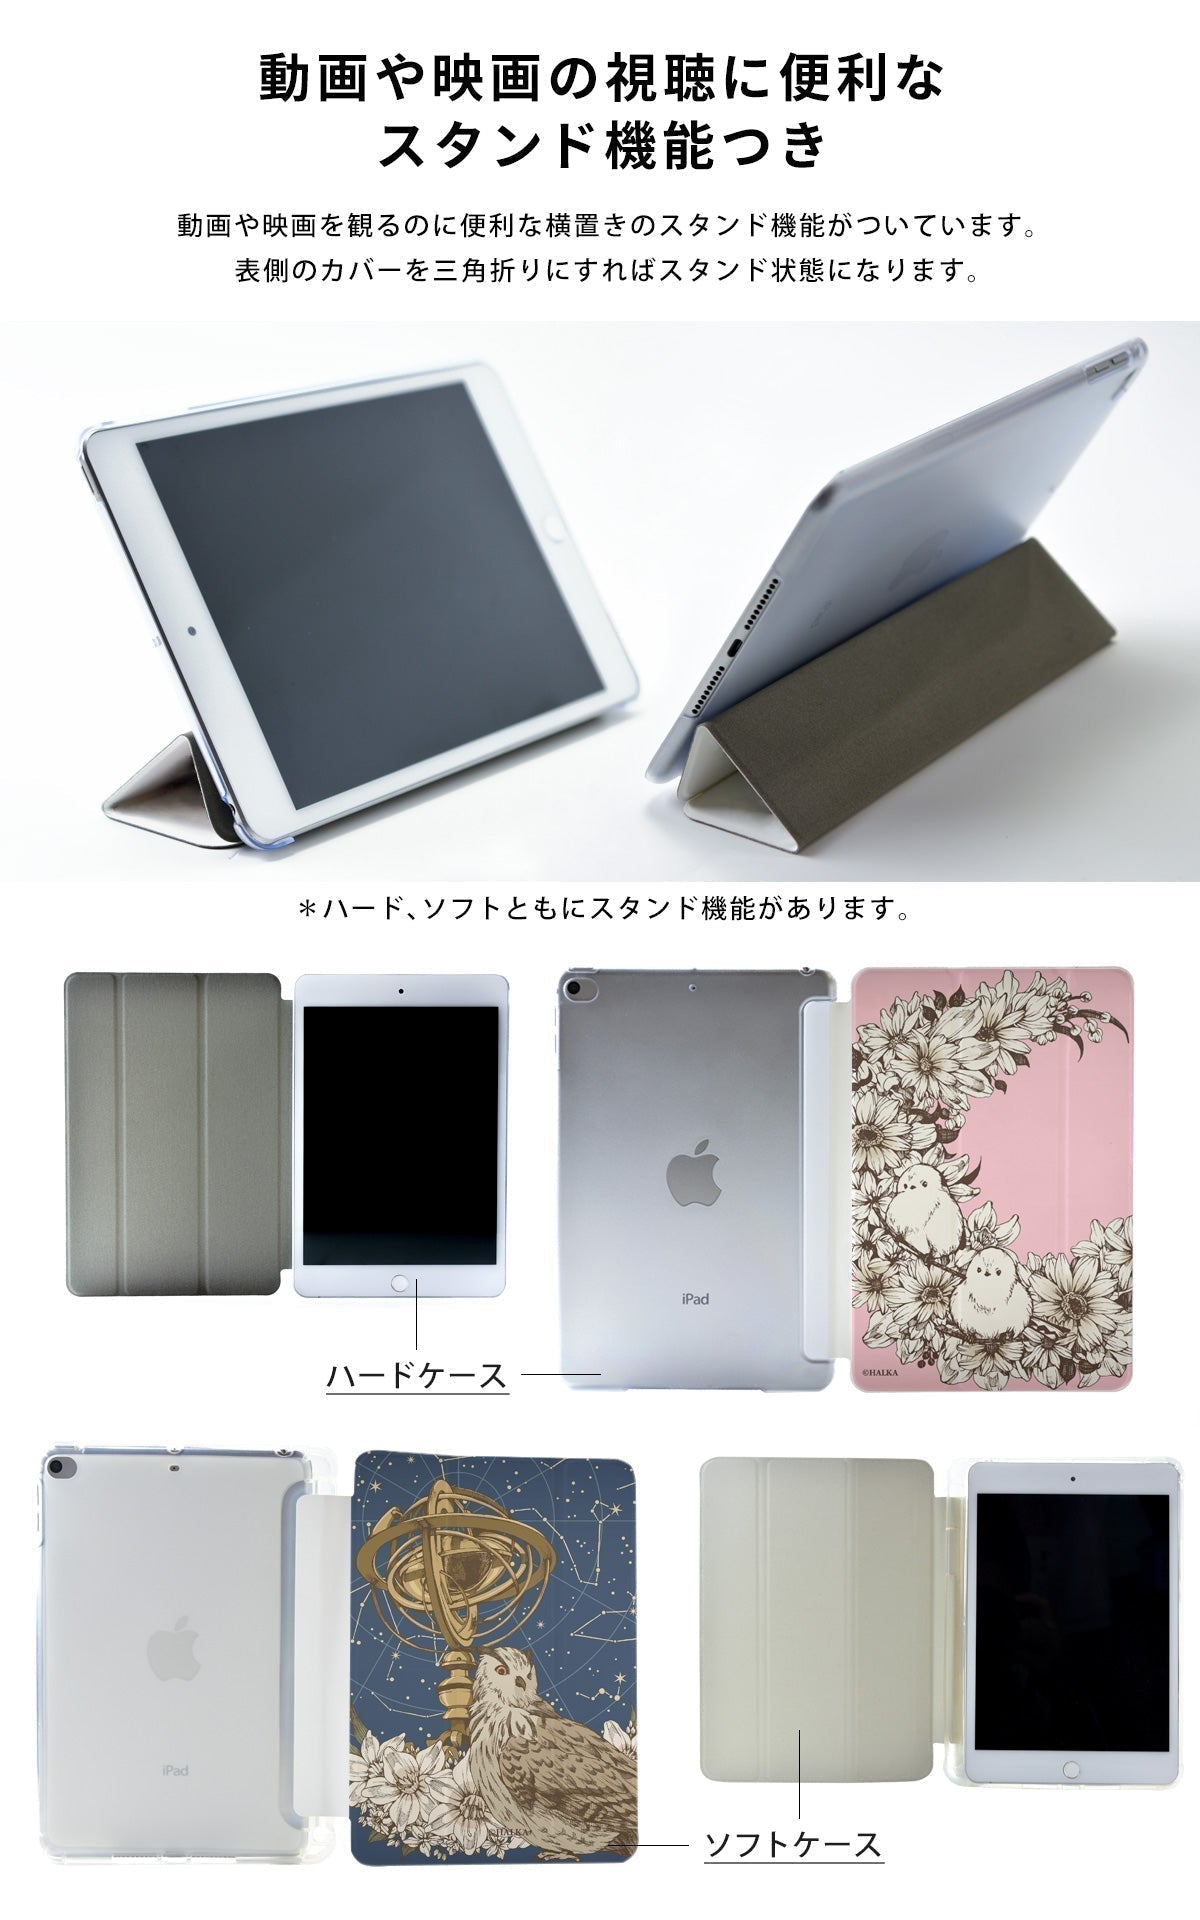 iPad ケース Air 5/4/3/2/1 10.9インチ iPadAir5 iPadケース おしゃれ かわいい 楽器 名入れ